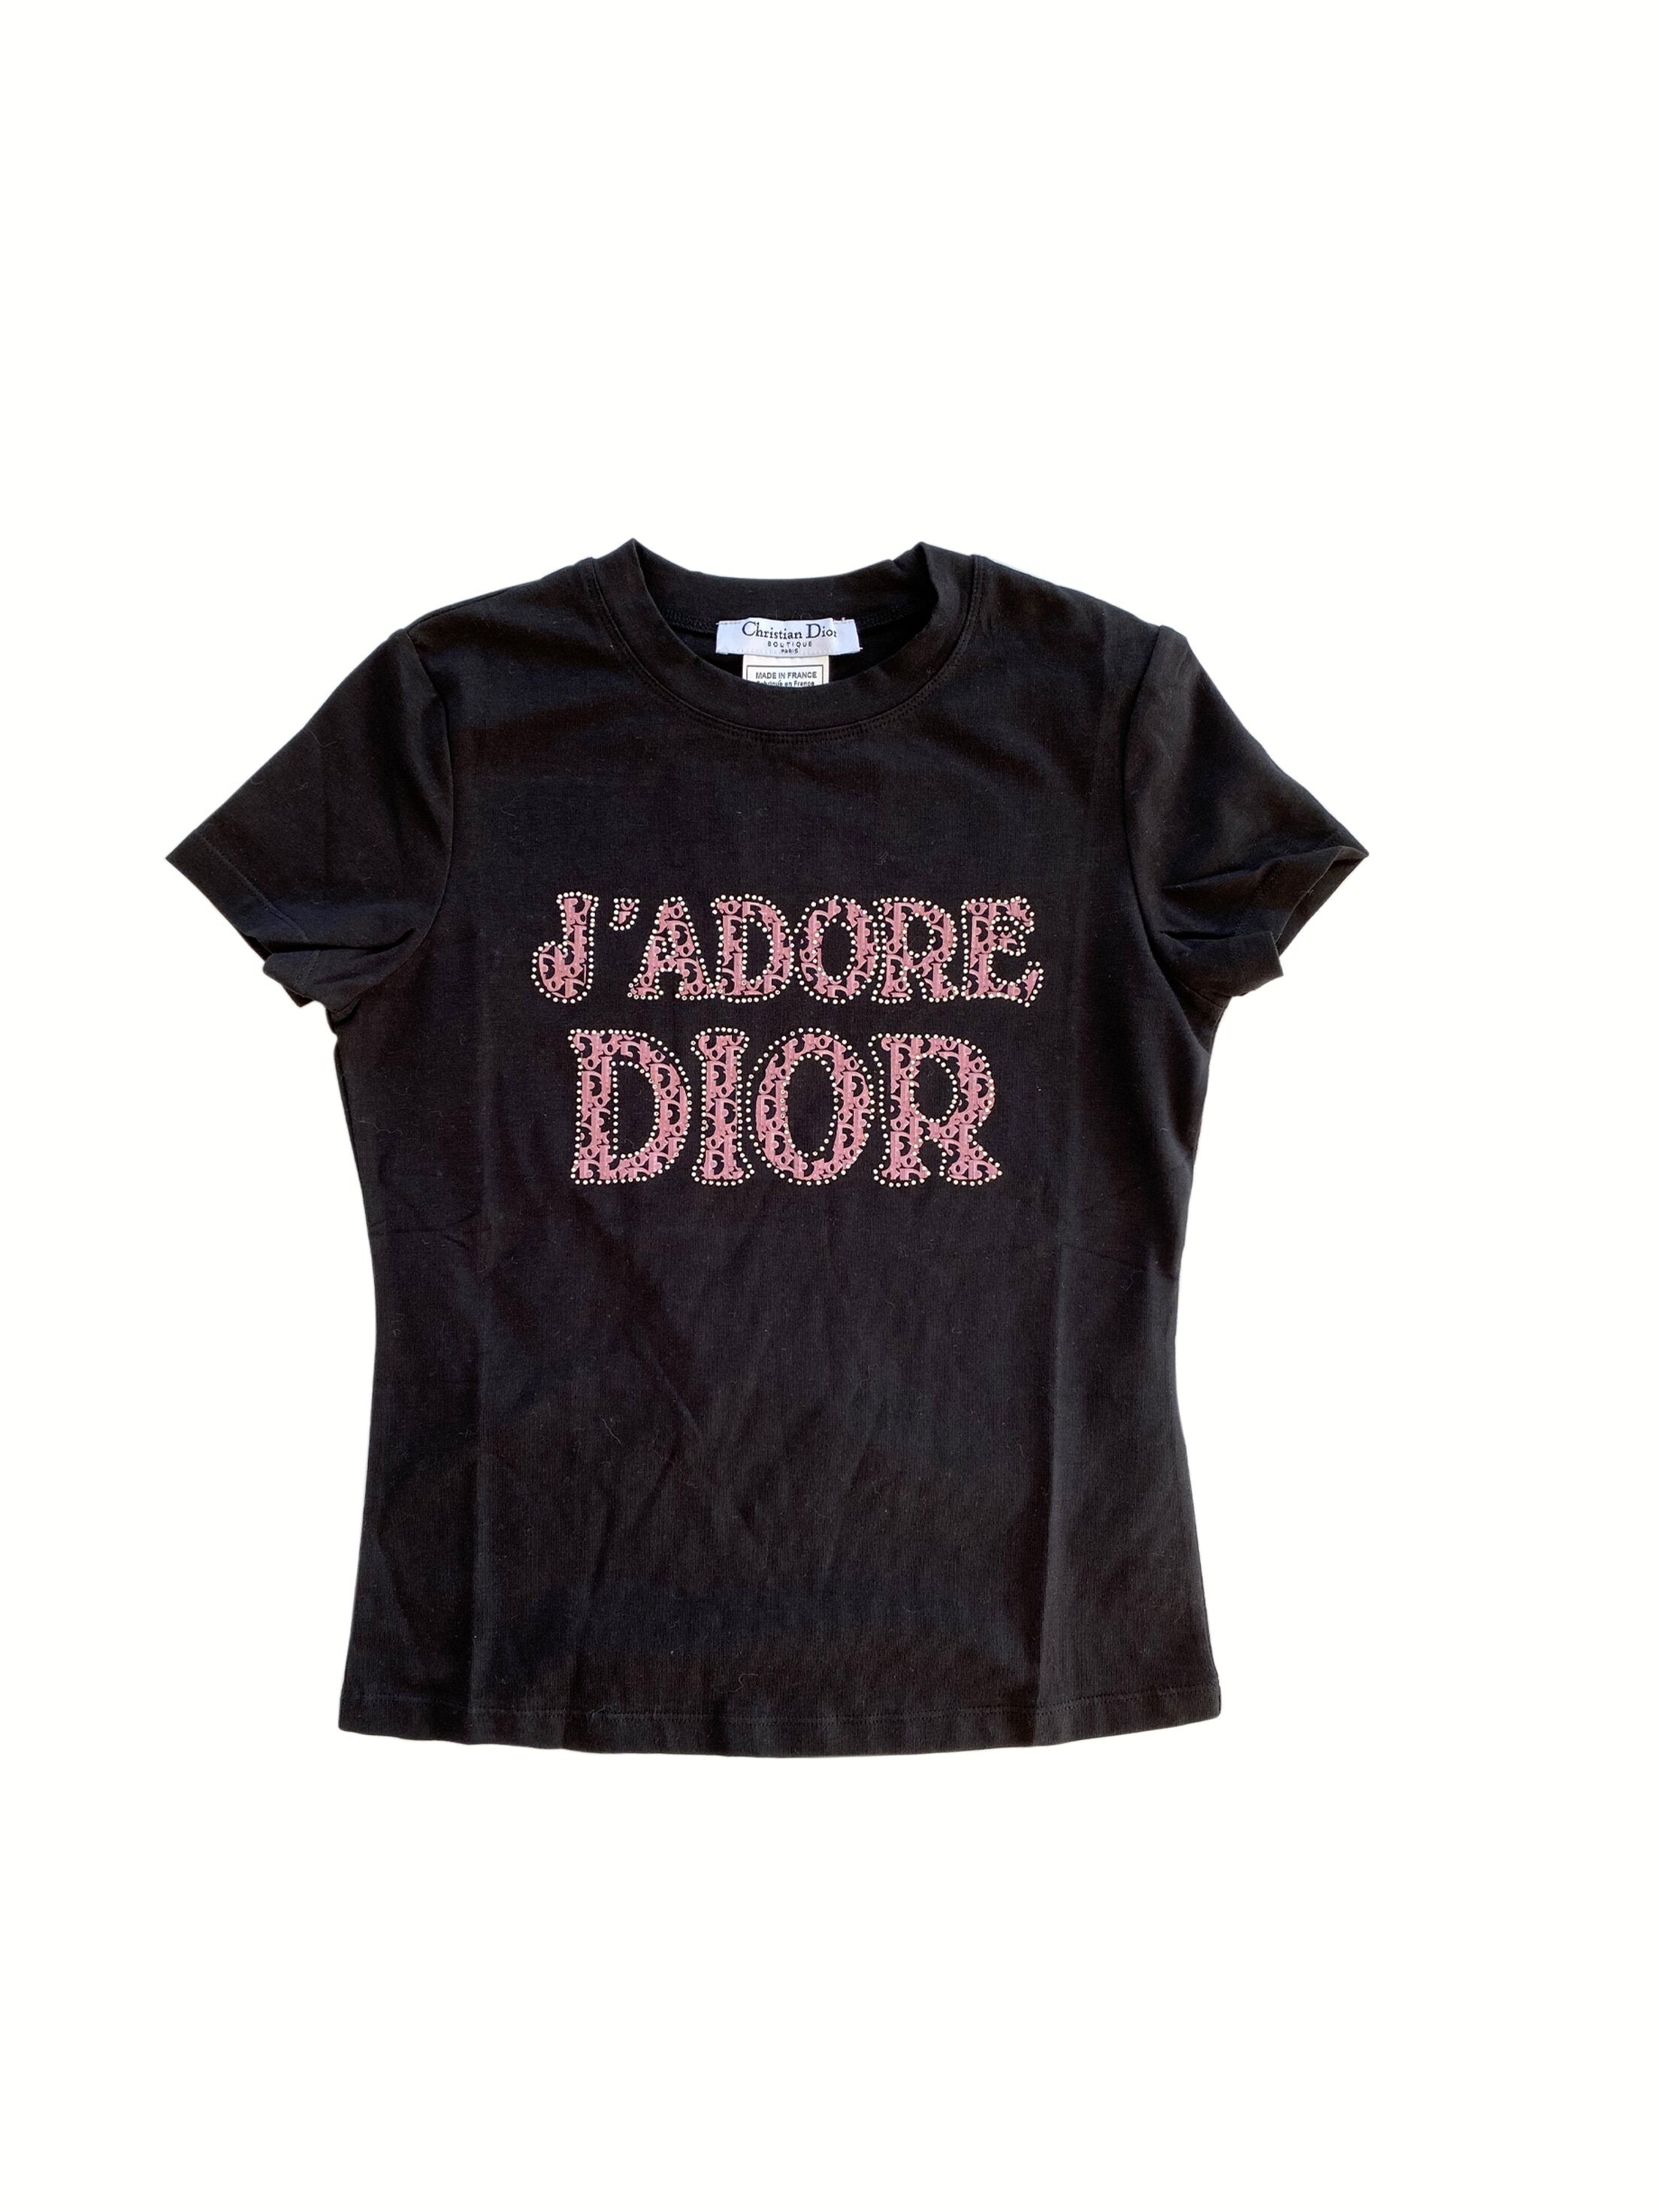 Authentic Vintage Jadore Christian Dior Boutique T Shirt Size 6 RARE  eBay